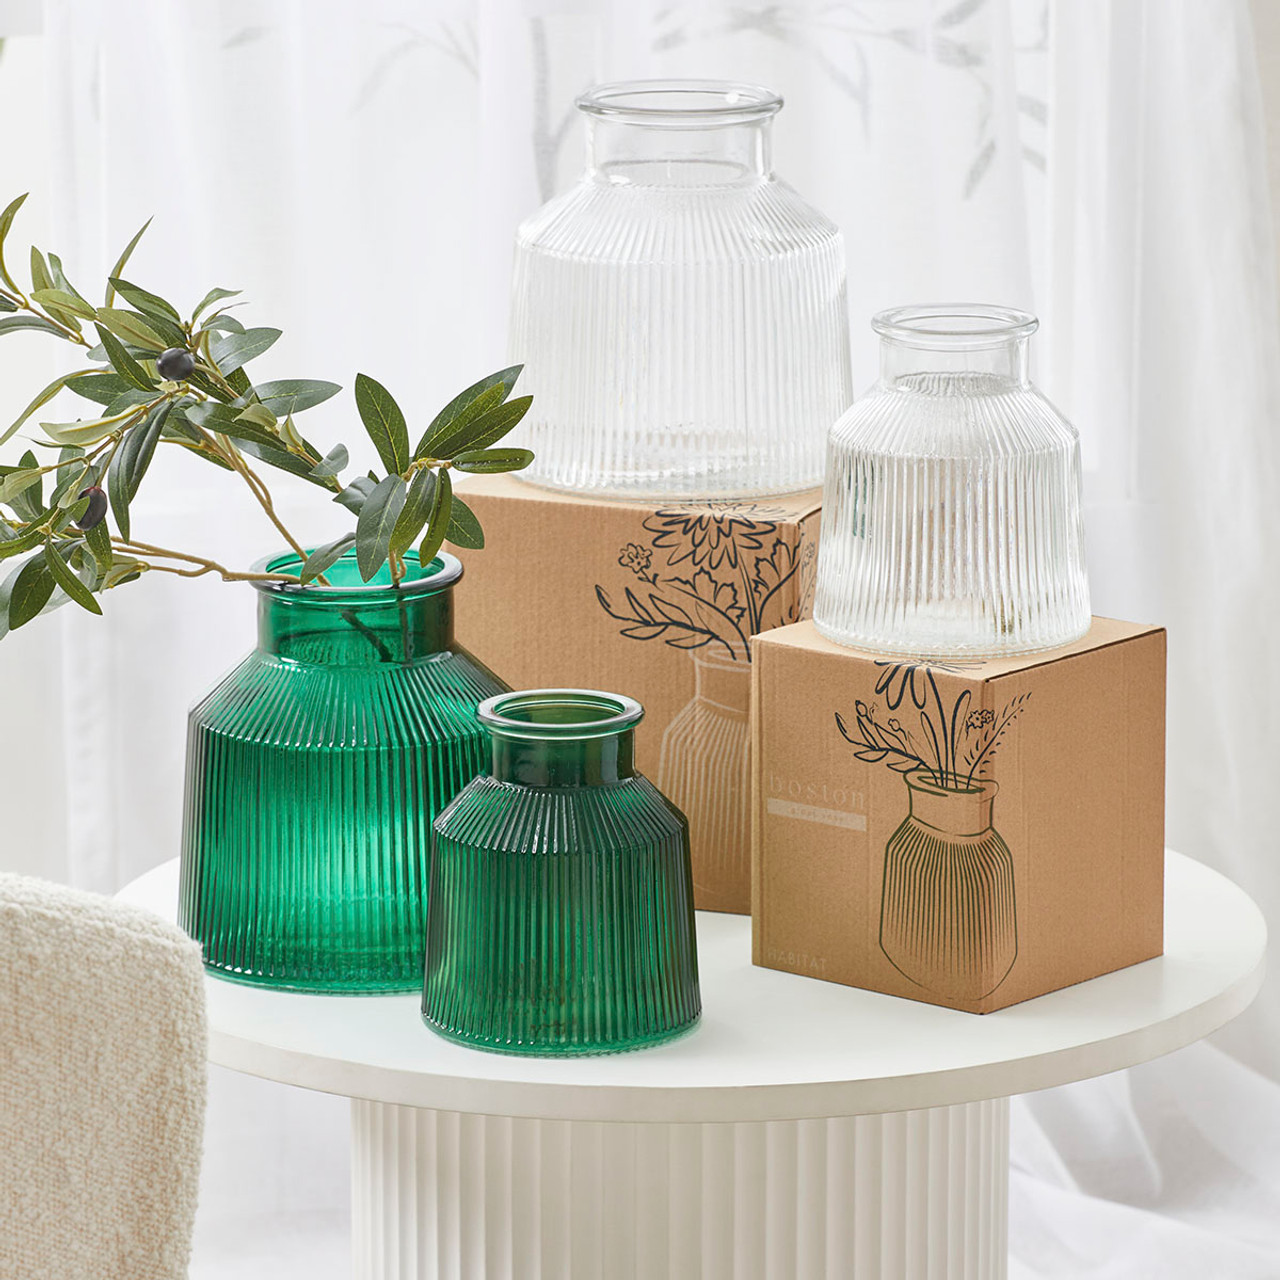 Buy Habitat Glass vase - Clear, Vases